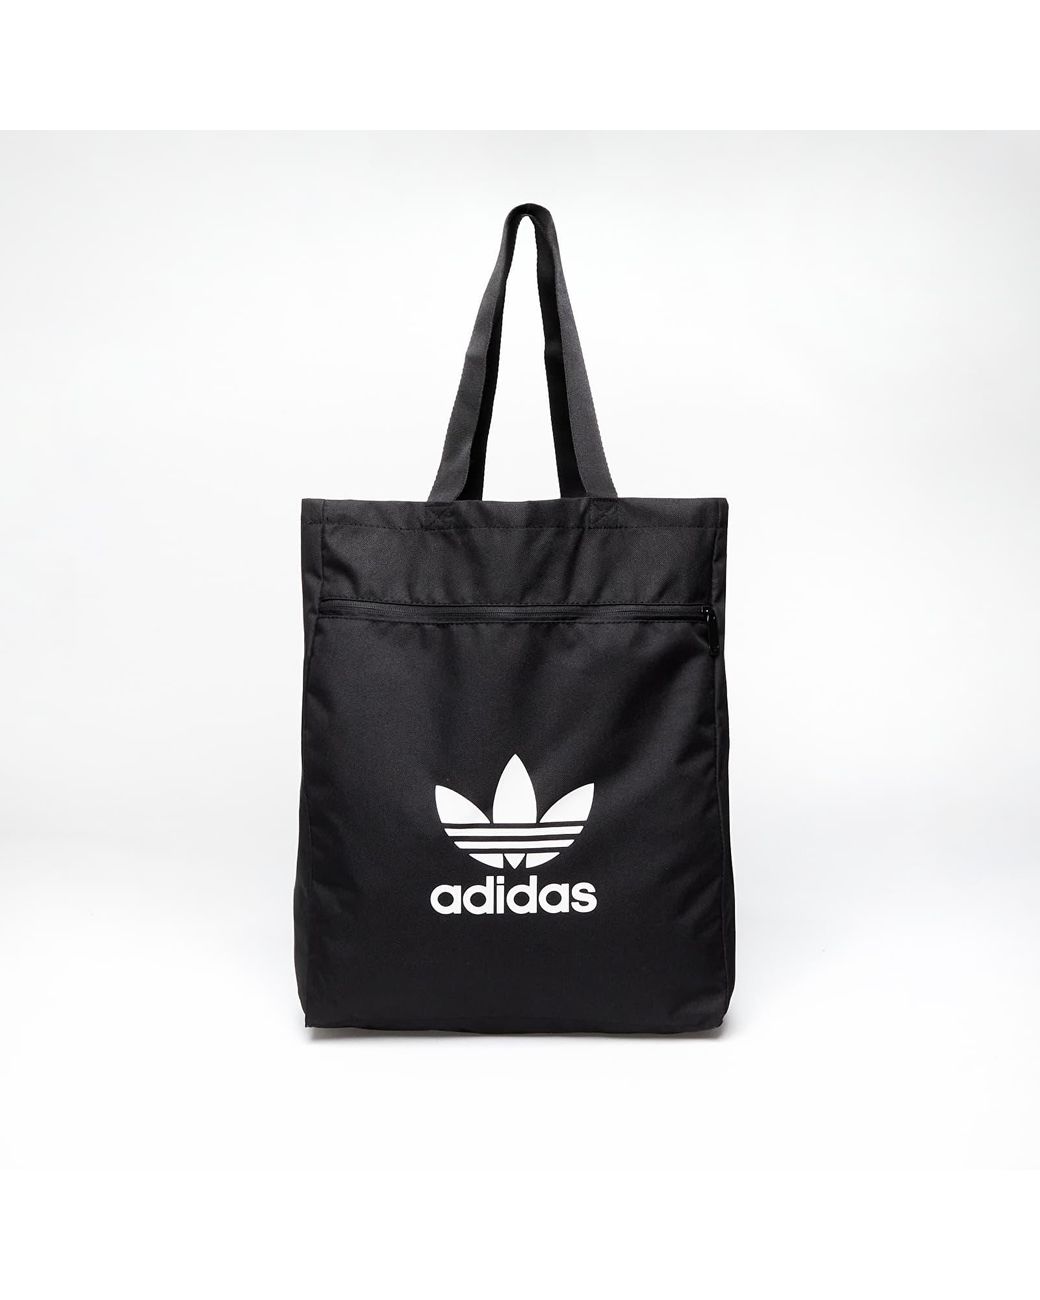 adidas Originals Adidas Ac Shopper in Black | Lyst